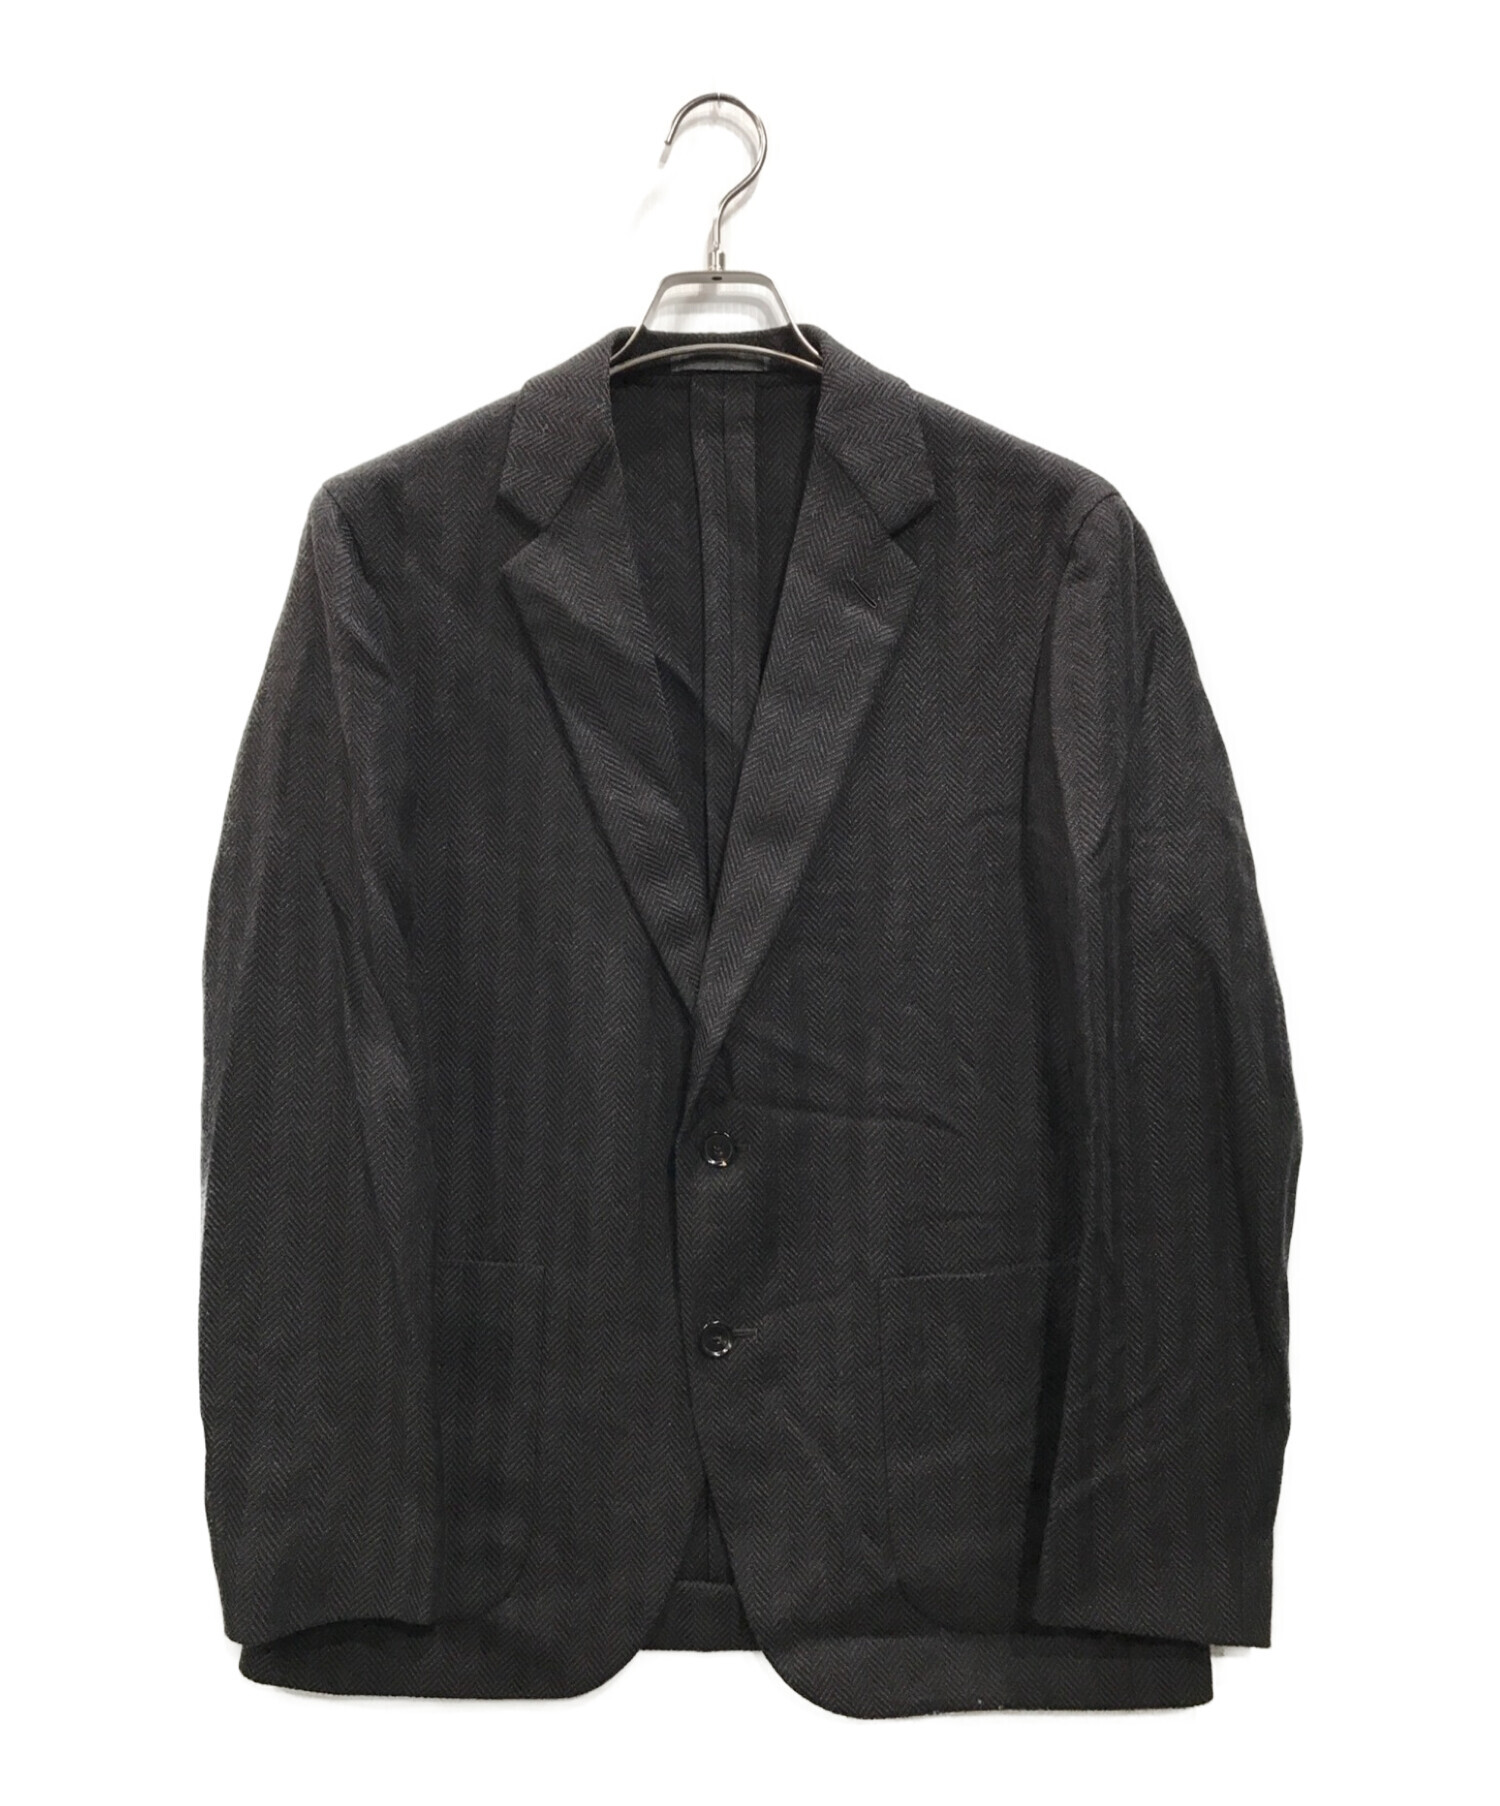 caruso (カルーゾ) ウールヘリンボーン2Bジャケット ブラック サイズ:48